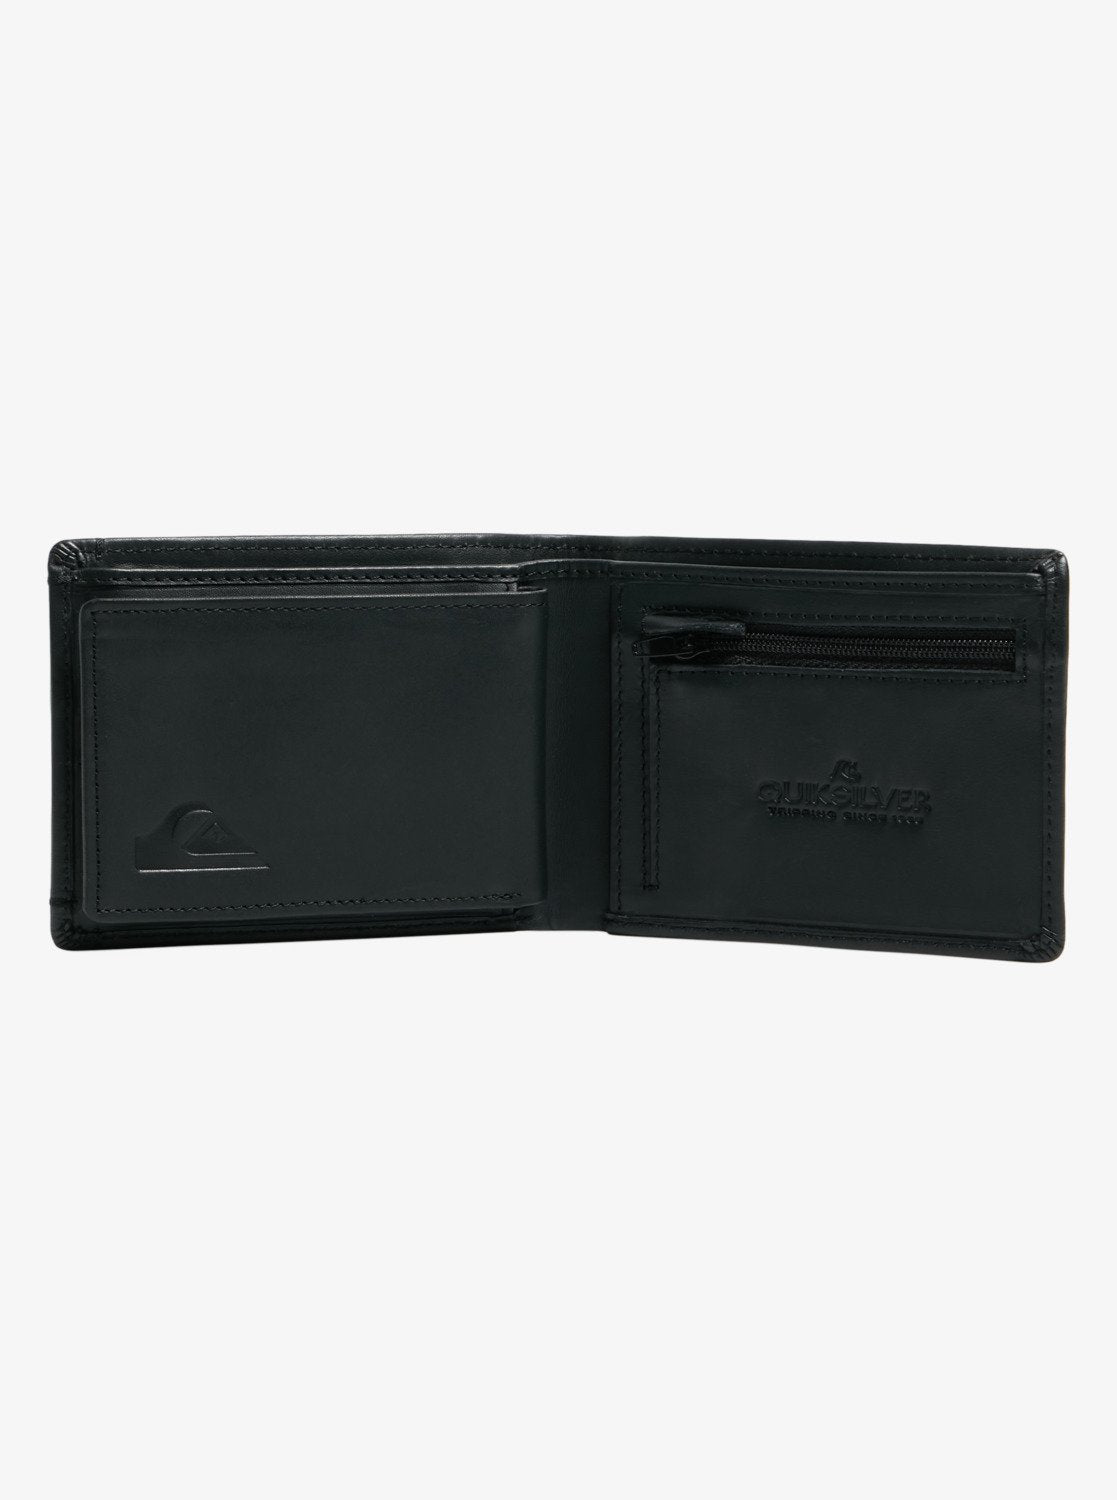 Quiksilver New Miss Dollar Bi Fold Leather Wallet in Black